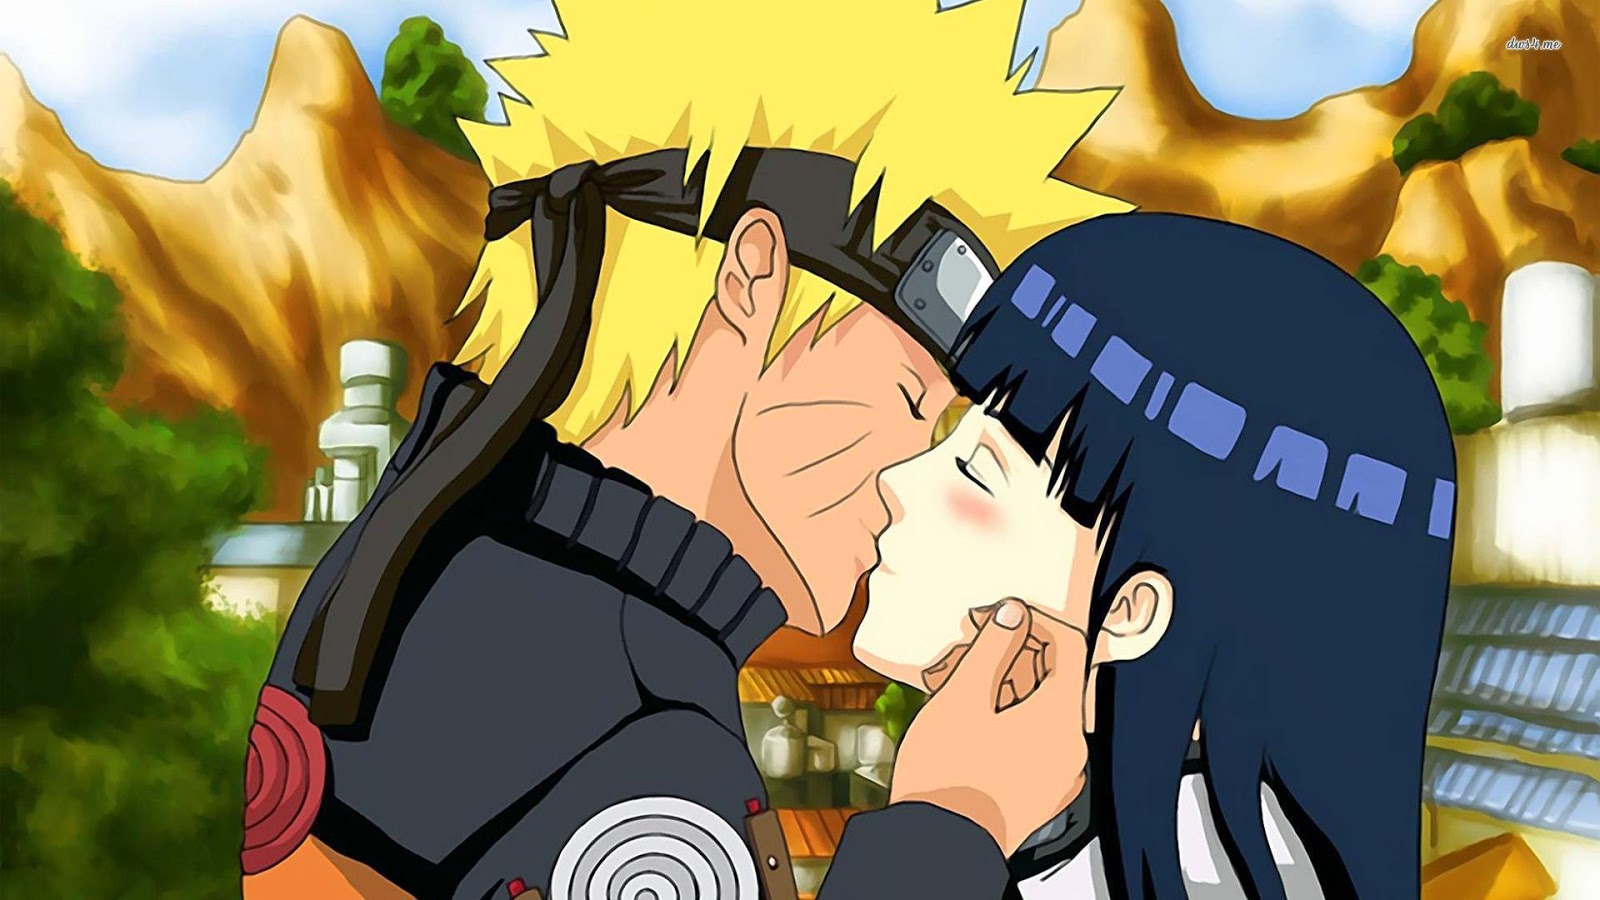 Naruto Hinata ảnh đẹp: Hình ảnh đẹp về cặp đôi Naruto và Hinata sẽ khiến trái tim bạn tan chảy. Với tình yêu chân thành và sự hy sinh cho nhau, Naruto và Hinata đã trở thành một trong những cặp đôi đáng yêu nhất của series Naruto. Xem ảnh để tận hưởng cảm giác ngọt ngào này.